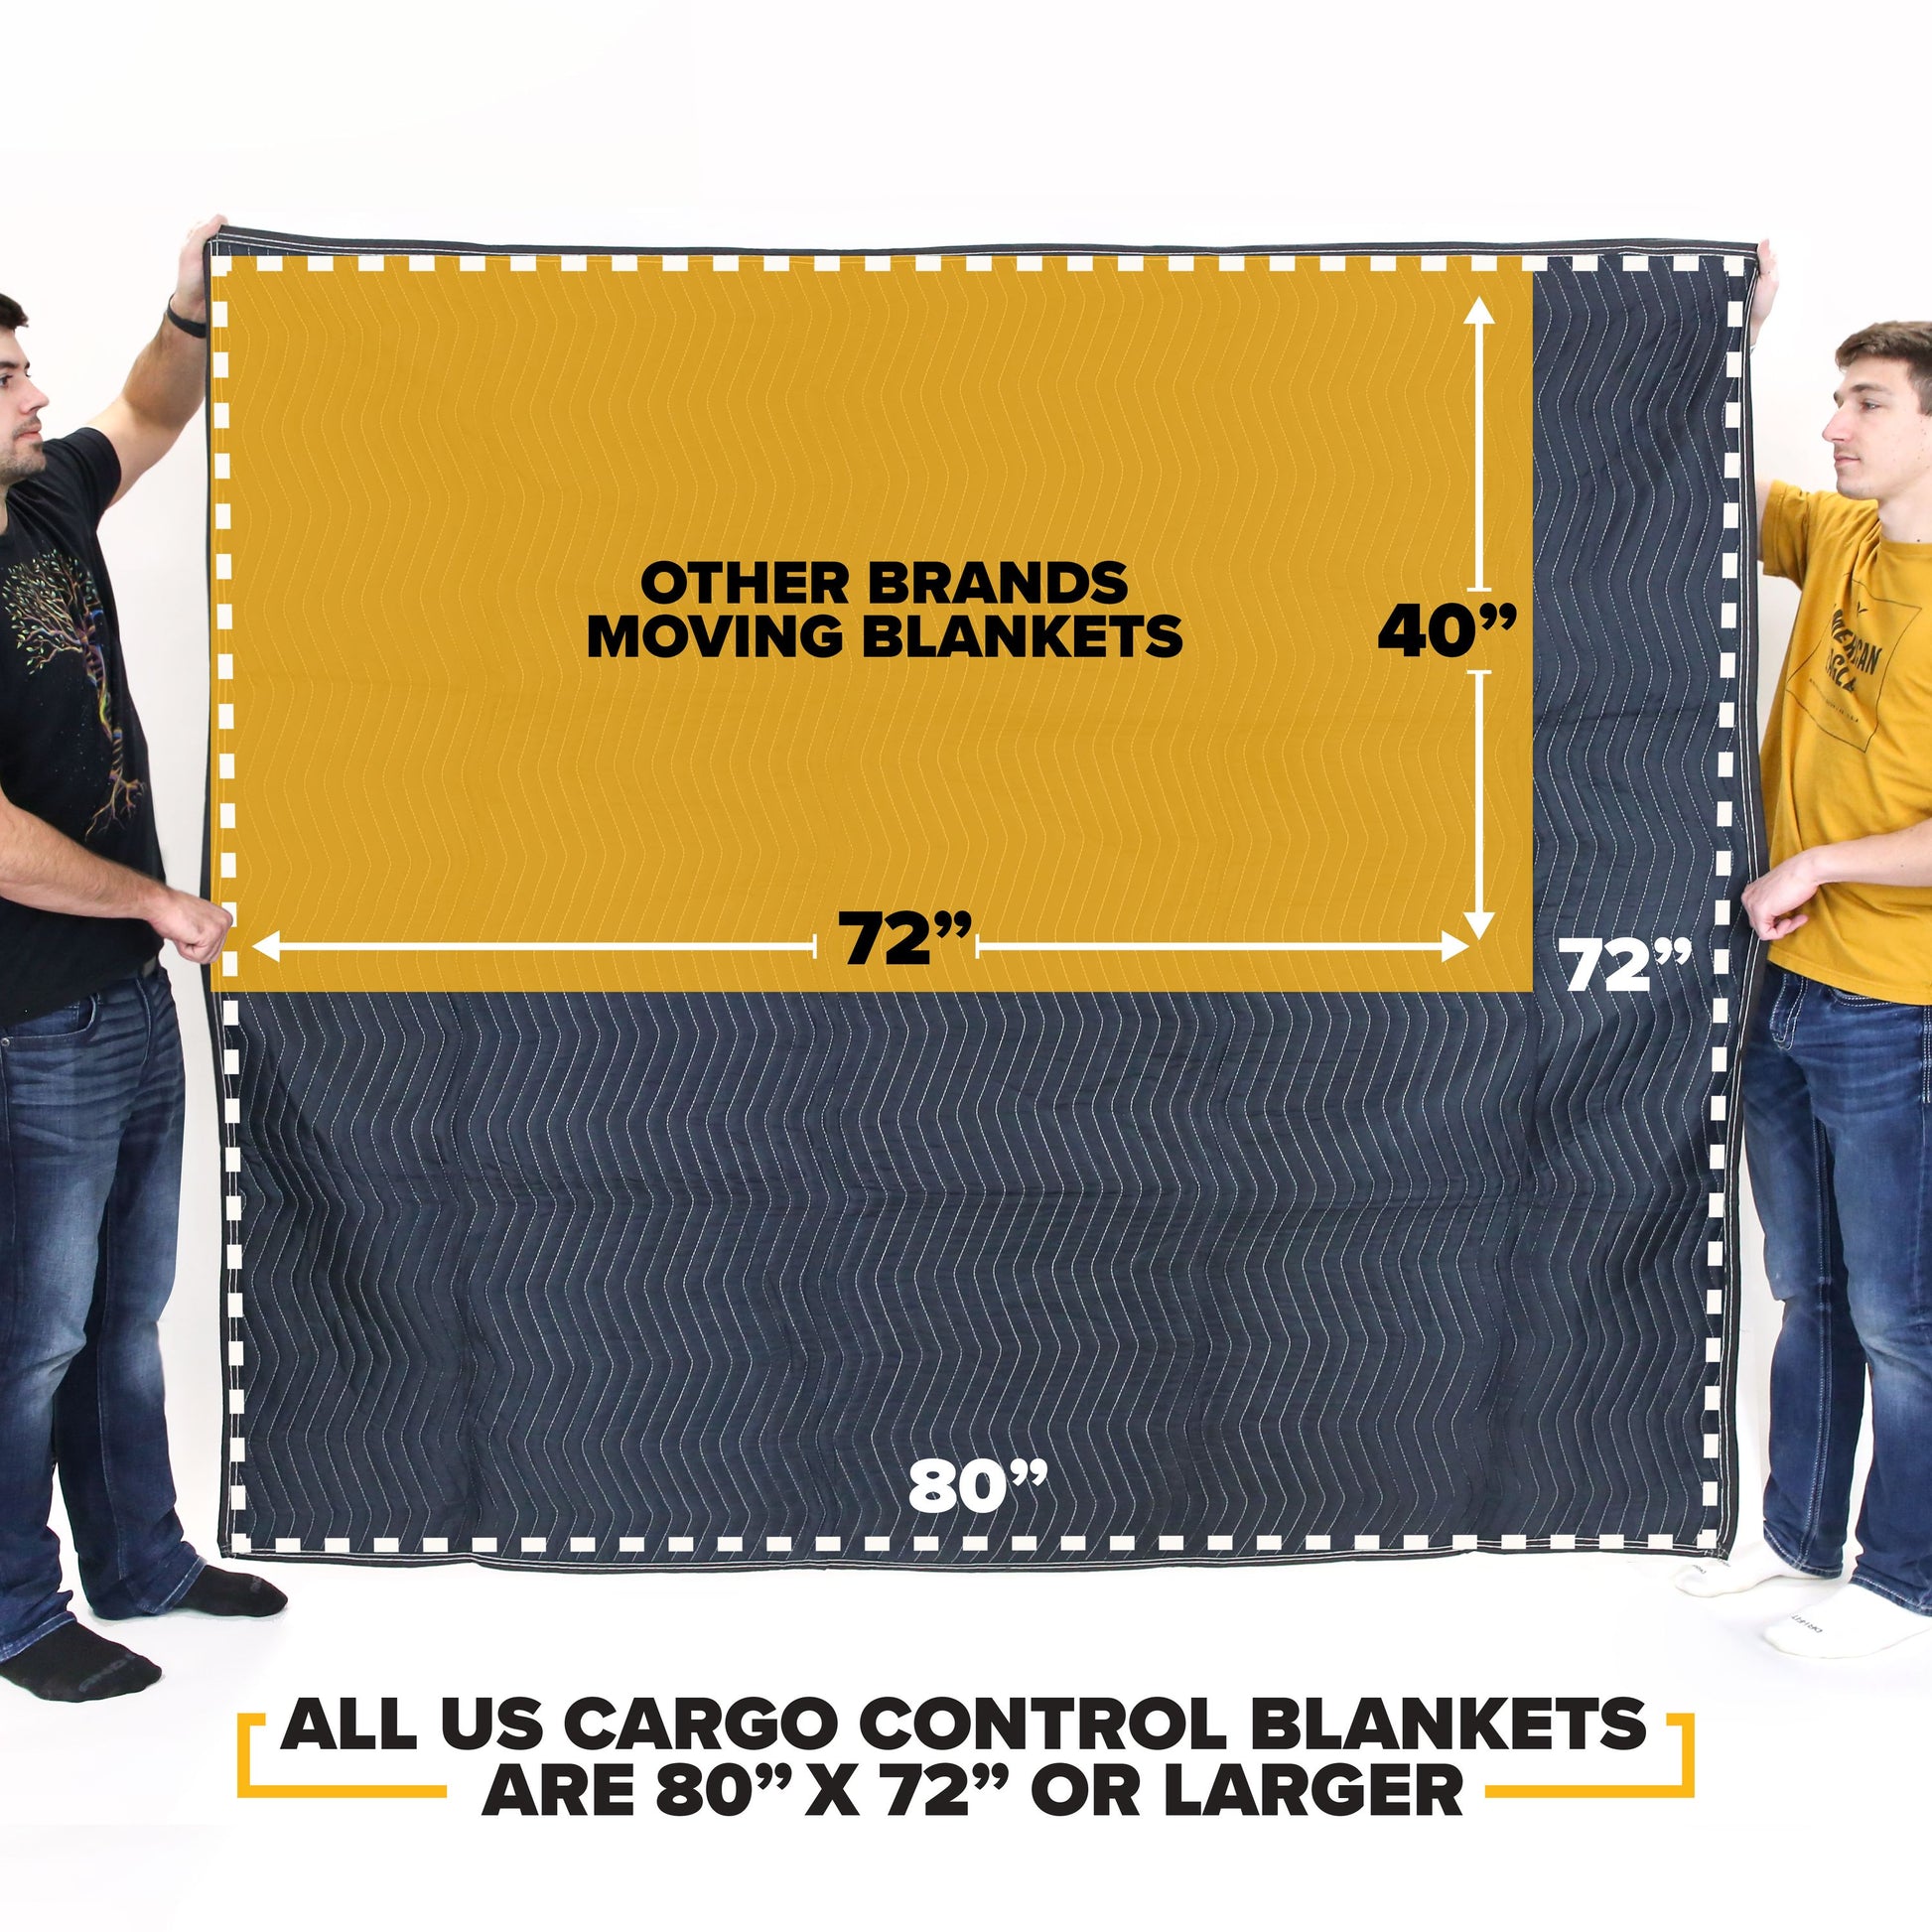 Moving Blanket Mega Mover  image 4 of 11